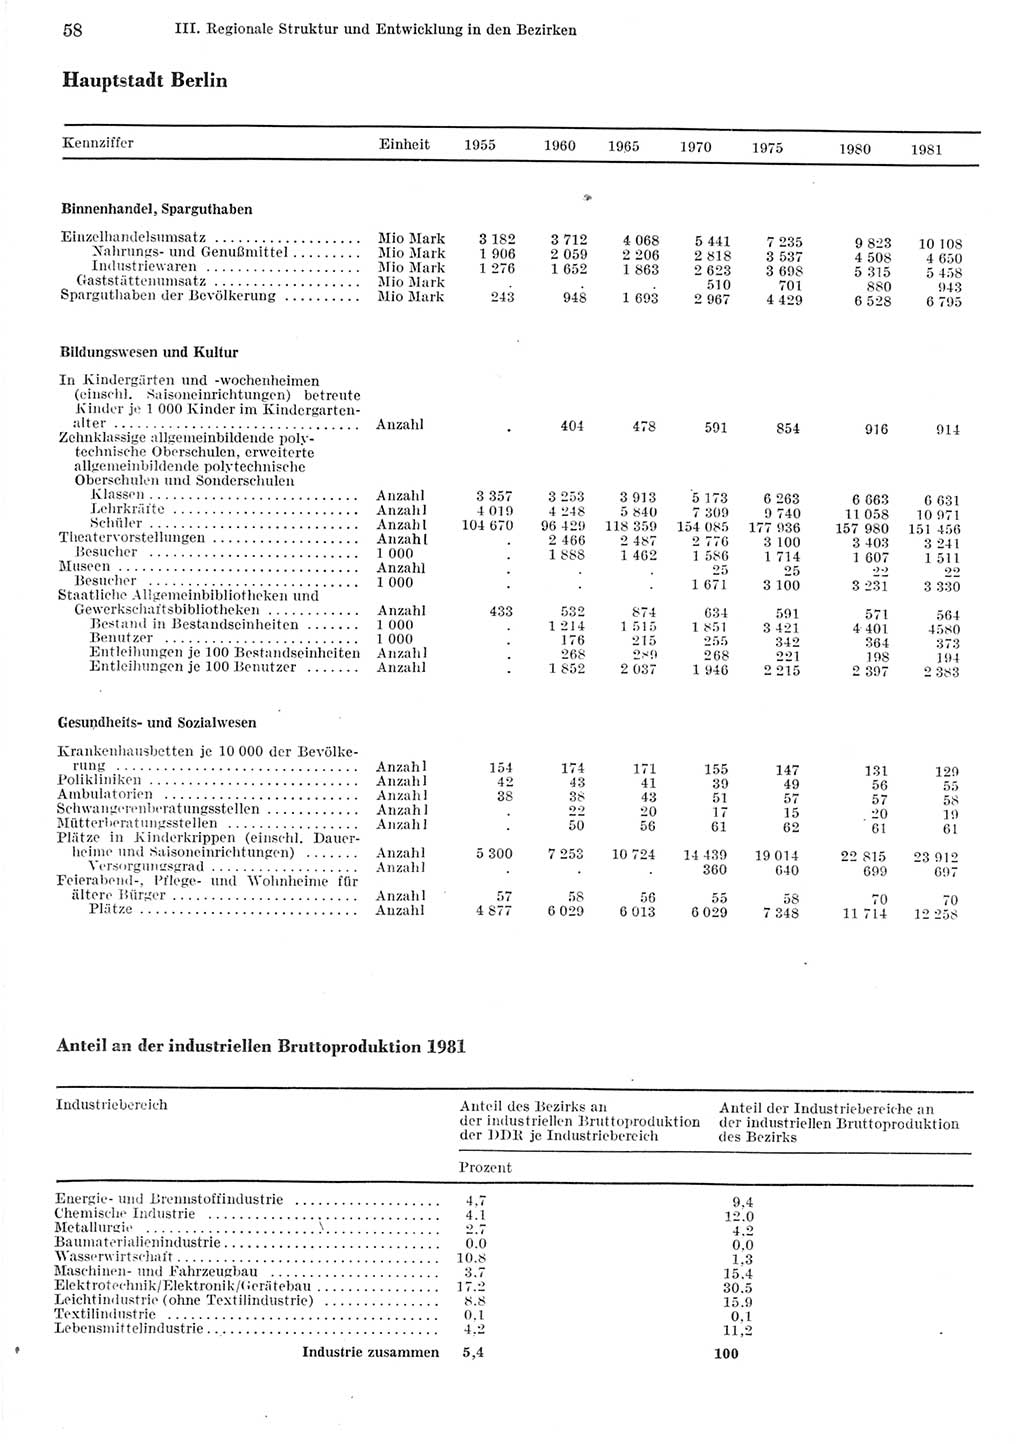 Statistisches Jahrbuch der Deutschen Demokratischen Republik (DDR) 1982, Seite 58 (Stat. Jb. DDR 1982, S. 58)